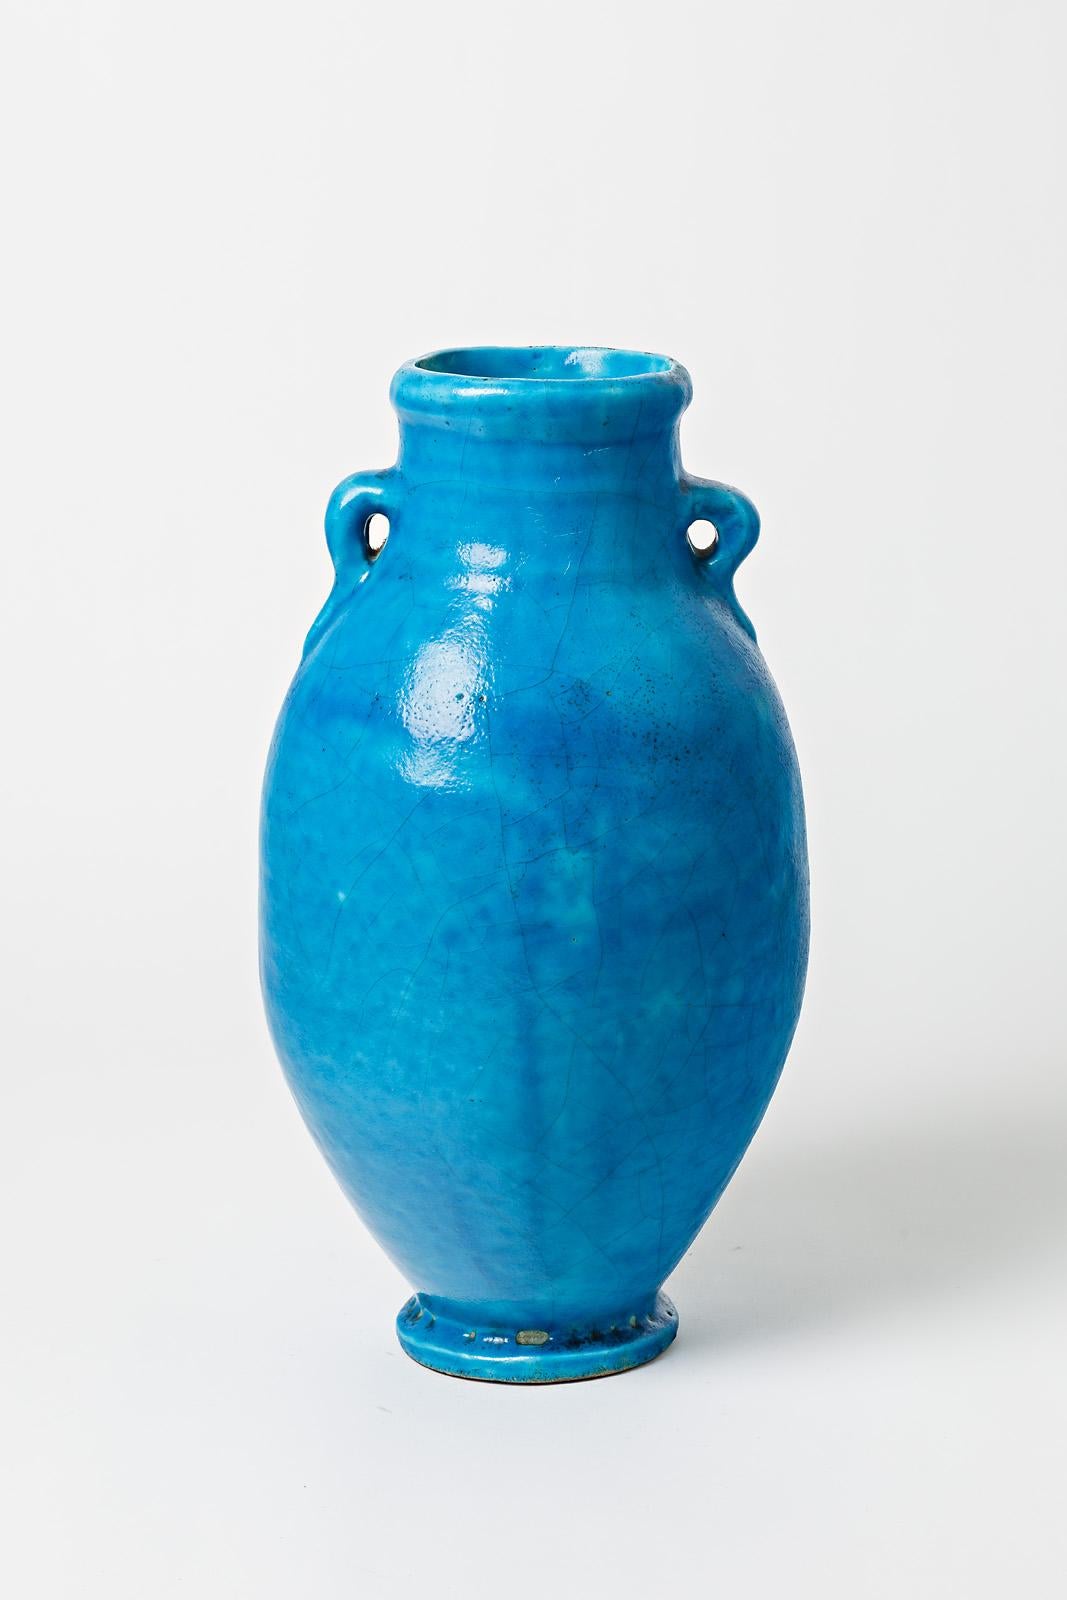 Vase en céramique émaillée bleue attribué à Raoul Lachenal.
Non signée. 
Circa 1930.

H : 15.7' x 7.9' x 7.9' pouces.